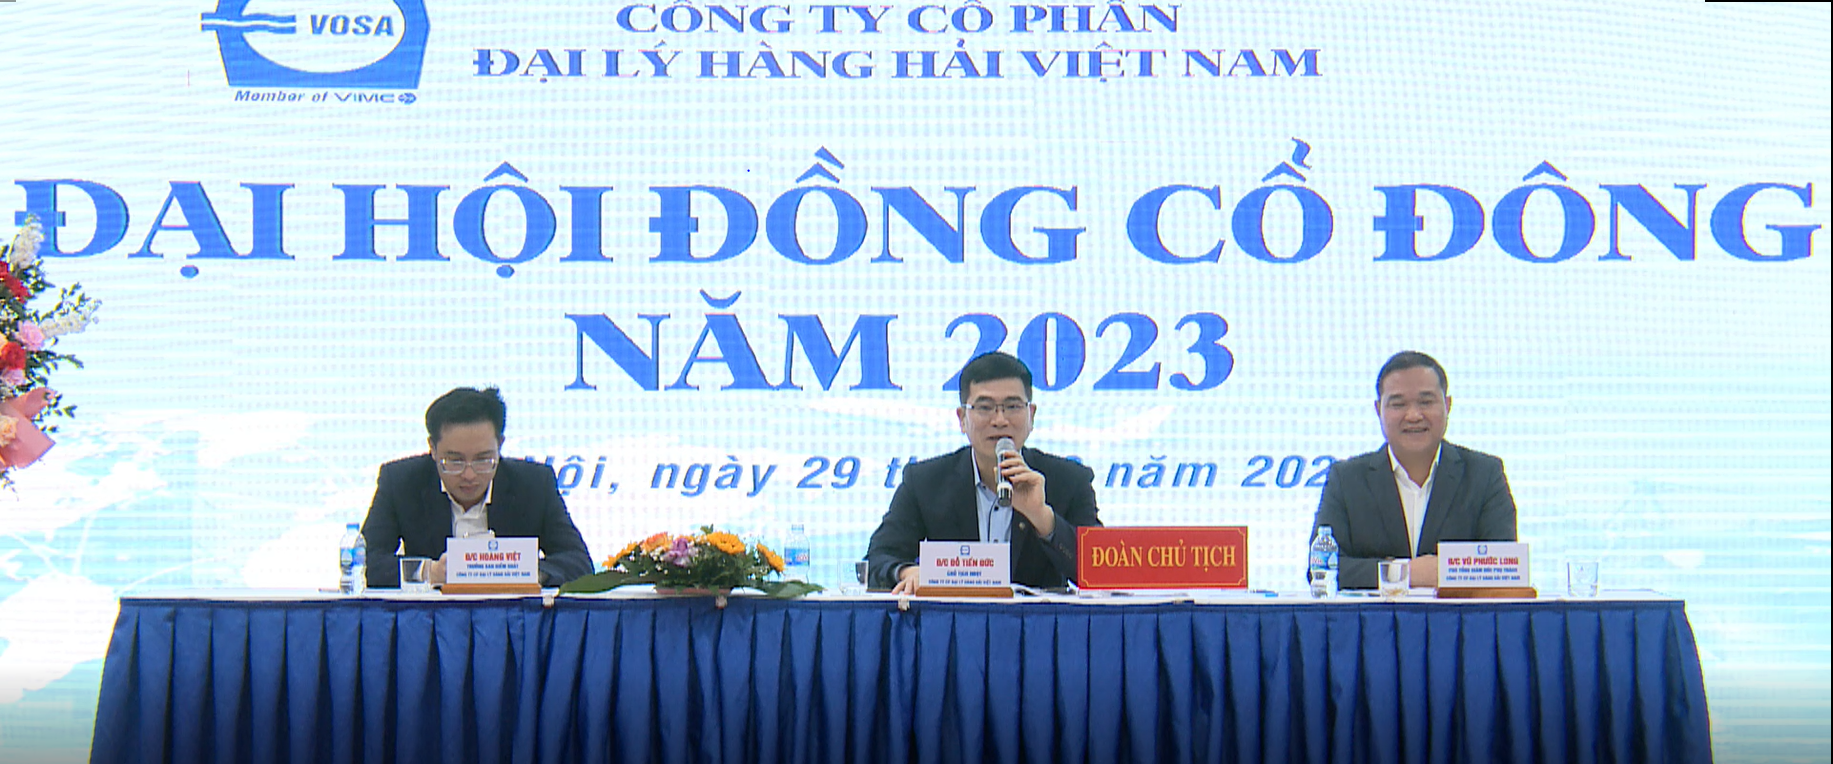 Đại hội cổ đông thường niên năm 2023 của CTCP Đại lý Hàng hải Việt Nam (VOSA) đã chính thức diễn ra - Ảnh 3.